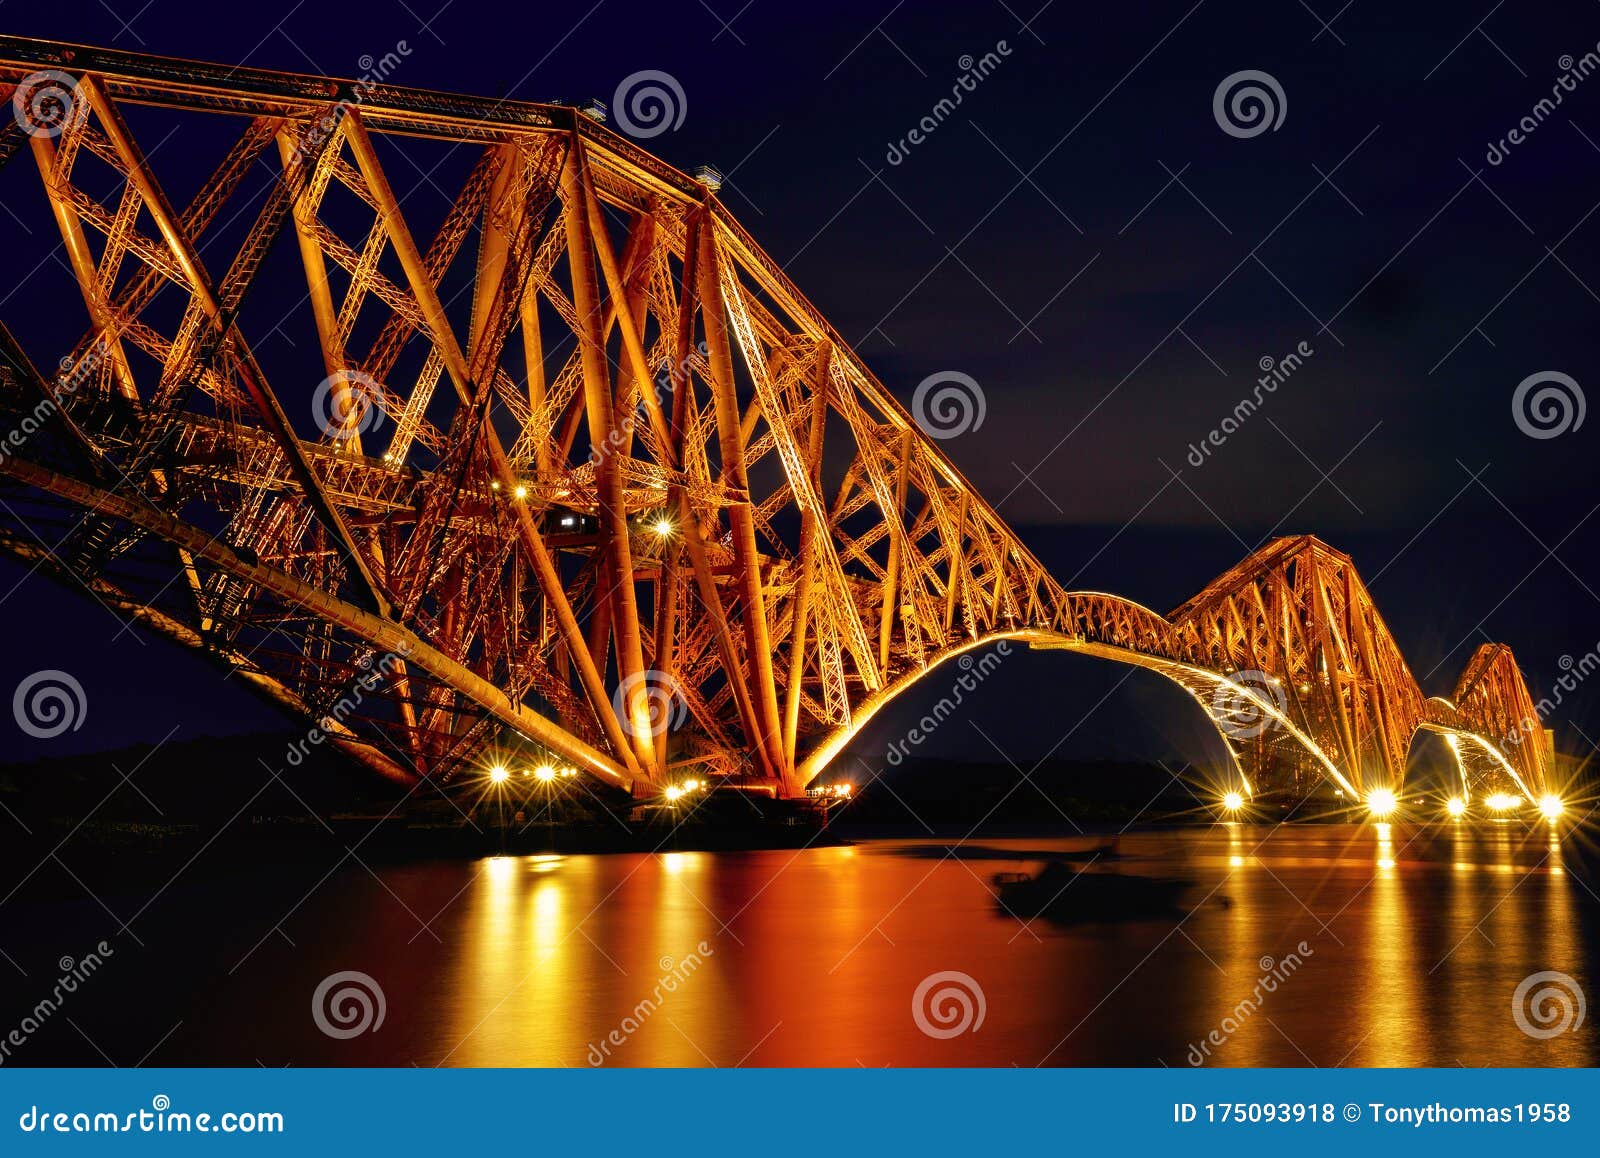 曾经走过苏格兰（六） 福斯湾大桥 Forth Rail Bridge - 爱丁堡游记攻略【携程攻略】